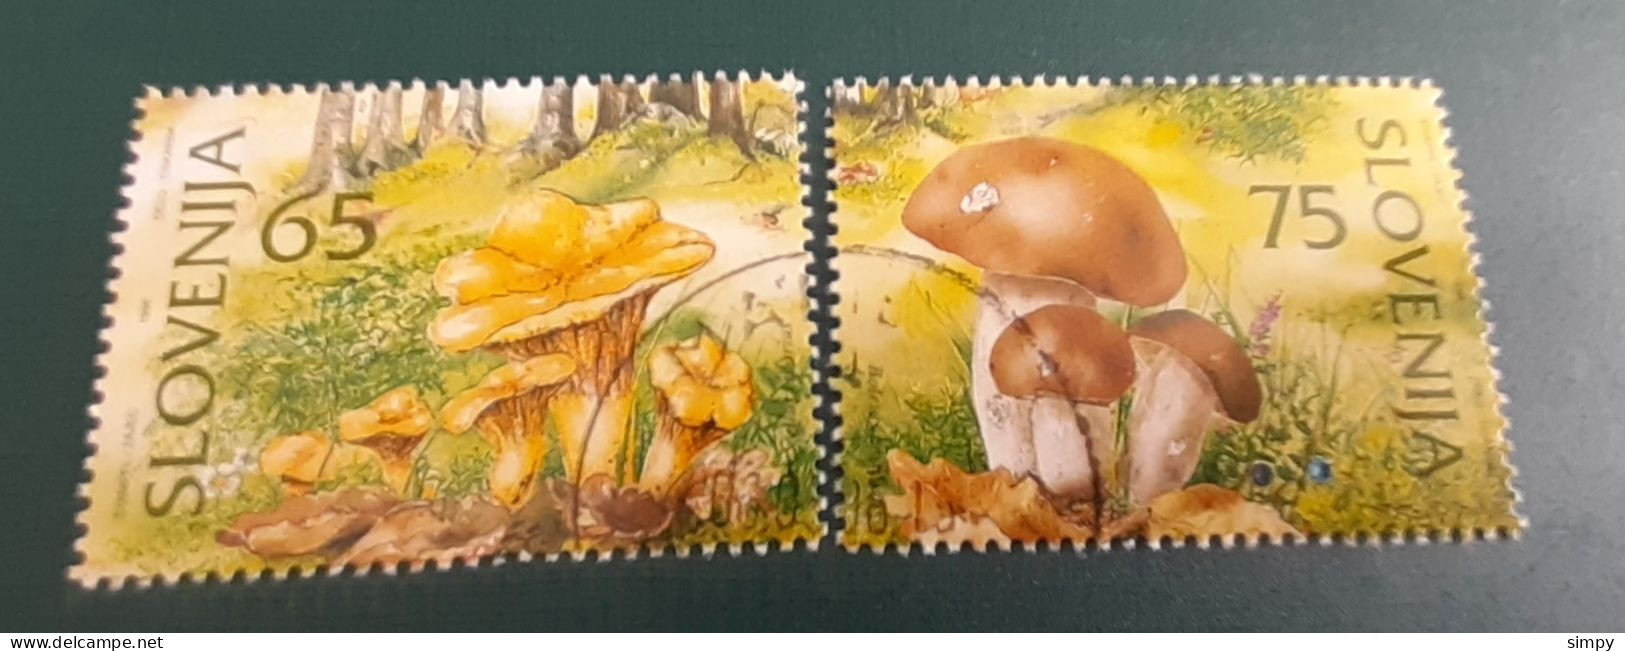 Mushrooms  Slovenia 1996 Used Stamps - Slovenia